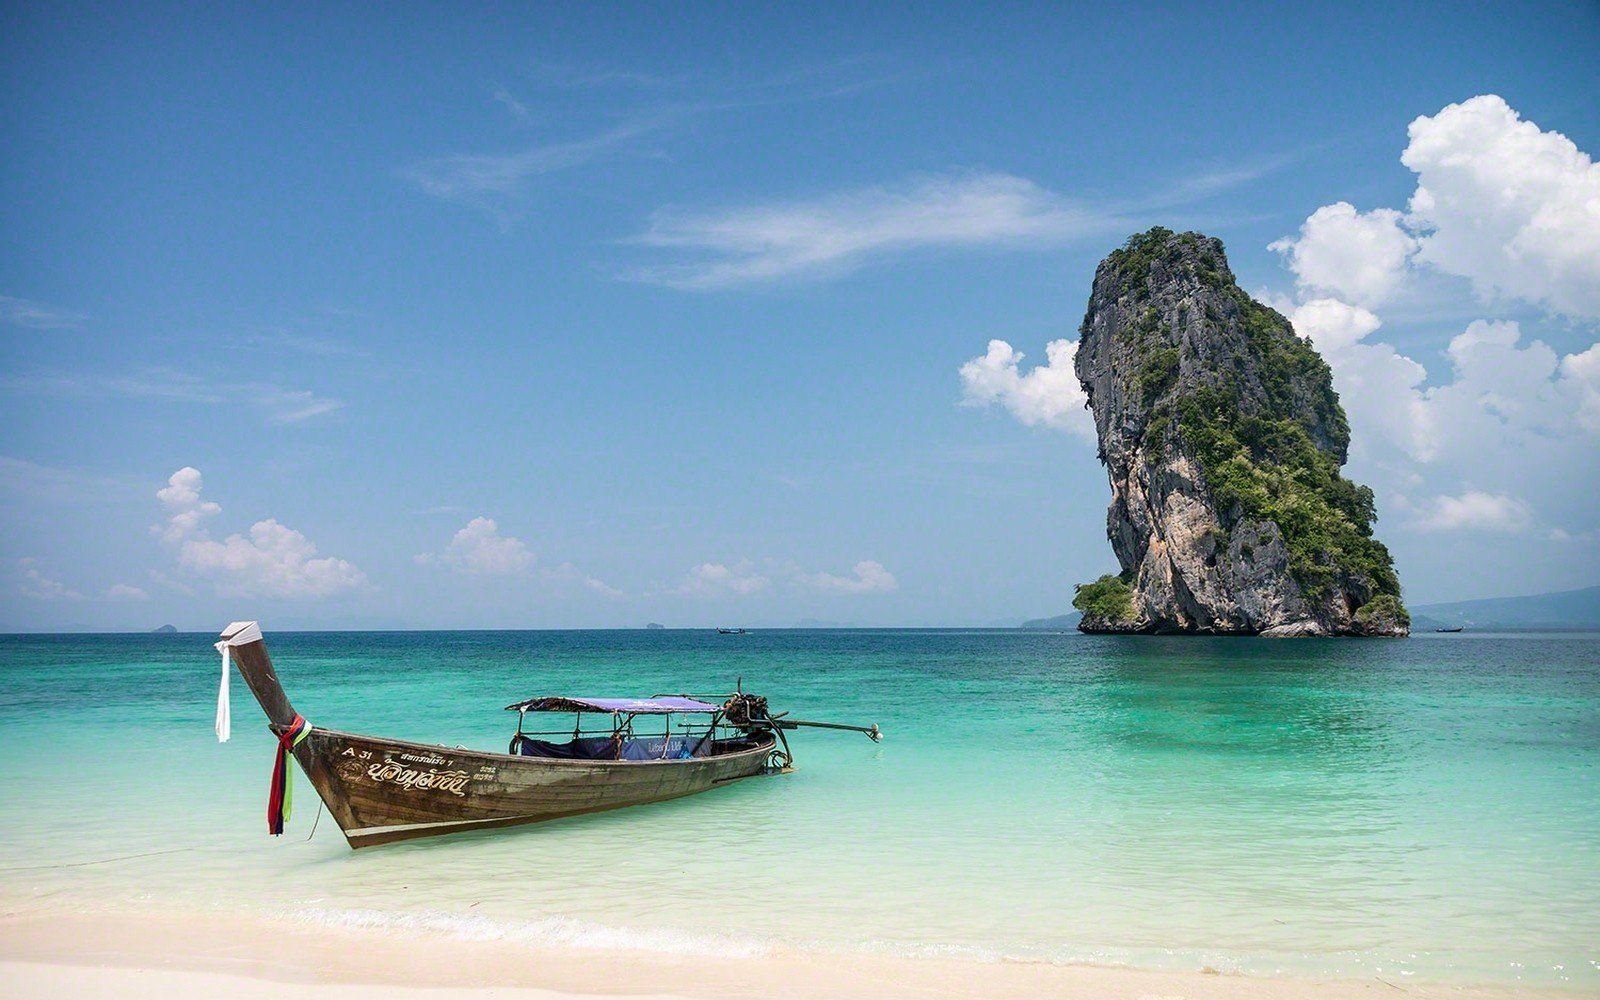 Boat island. Остров Краби. Таиланд, Пхукет, Андаманское море. Лодки Тайланд на остров. Океан в Тайланде Паттайя.